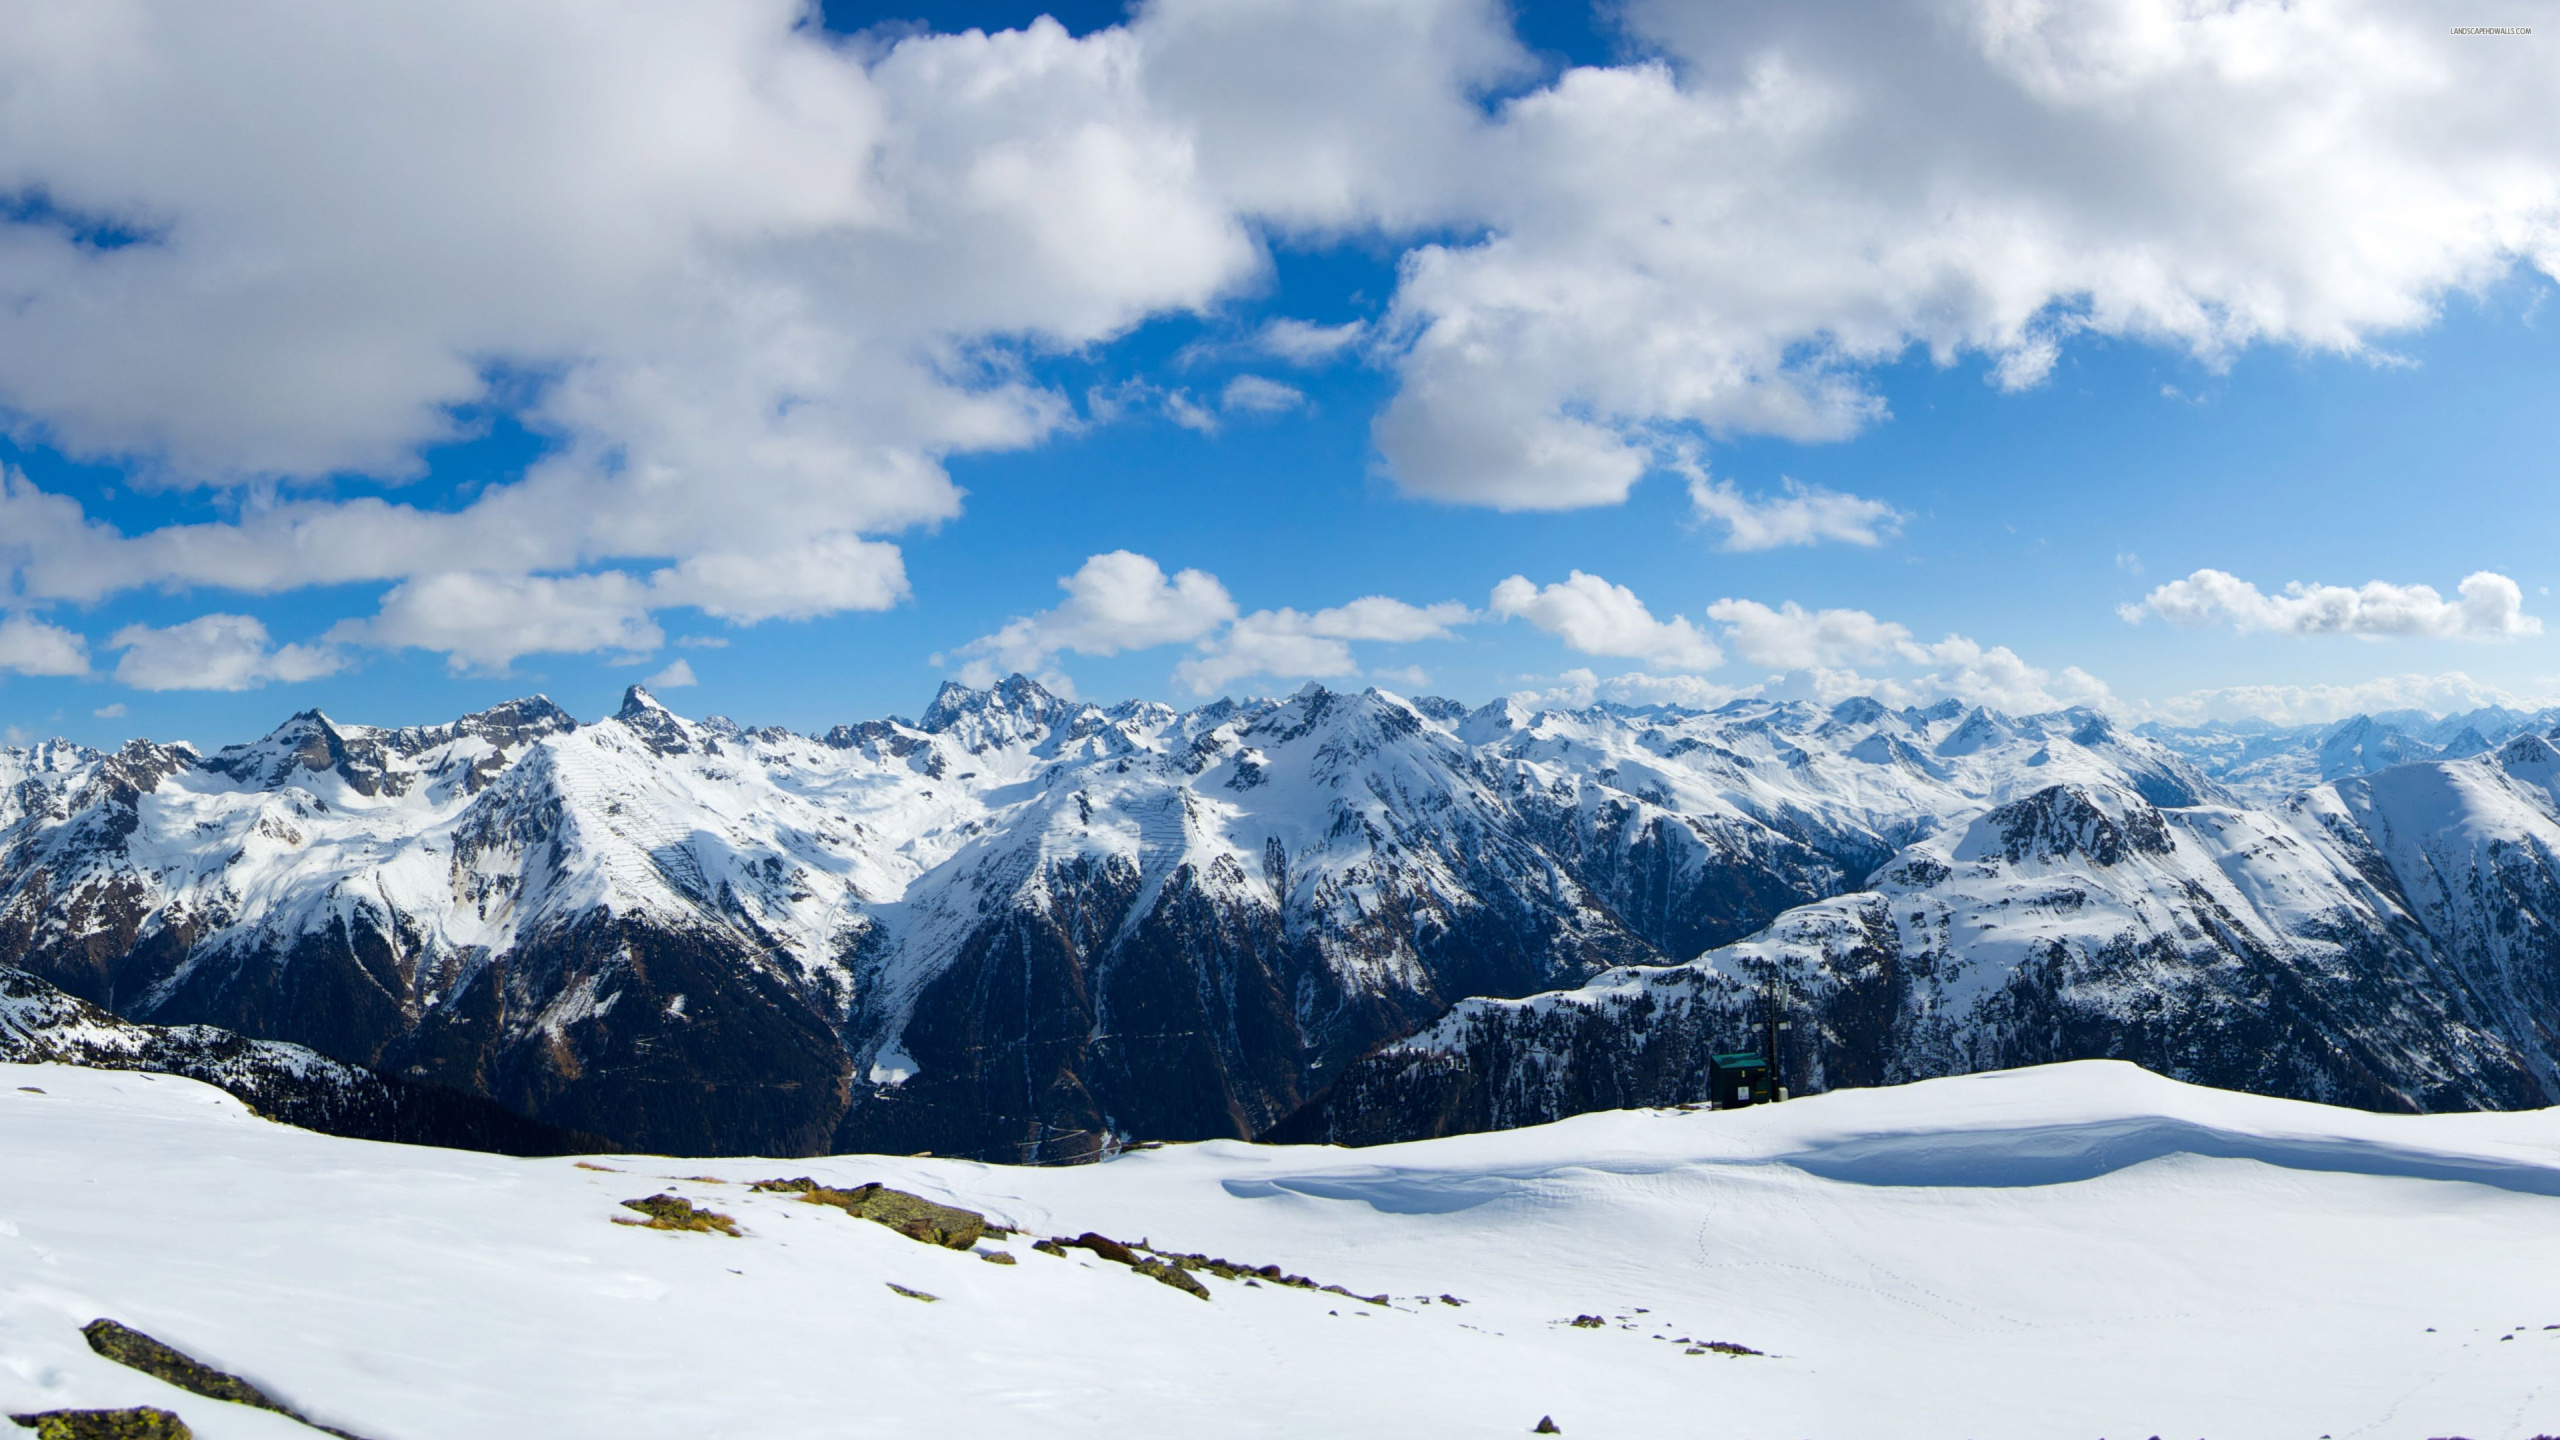 阿尔卑斯山, 多山的地貌, 山脉, 冬天, 奥地利 壁纸 2560x1440 允许